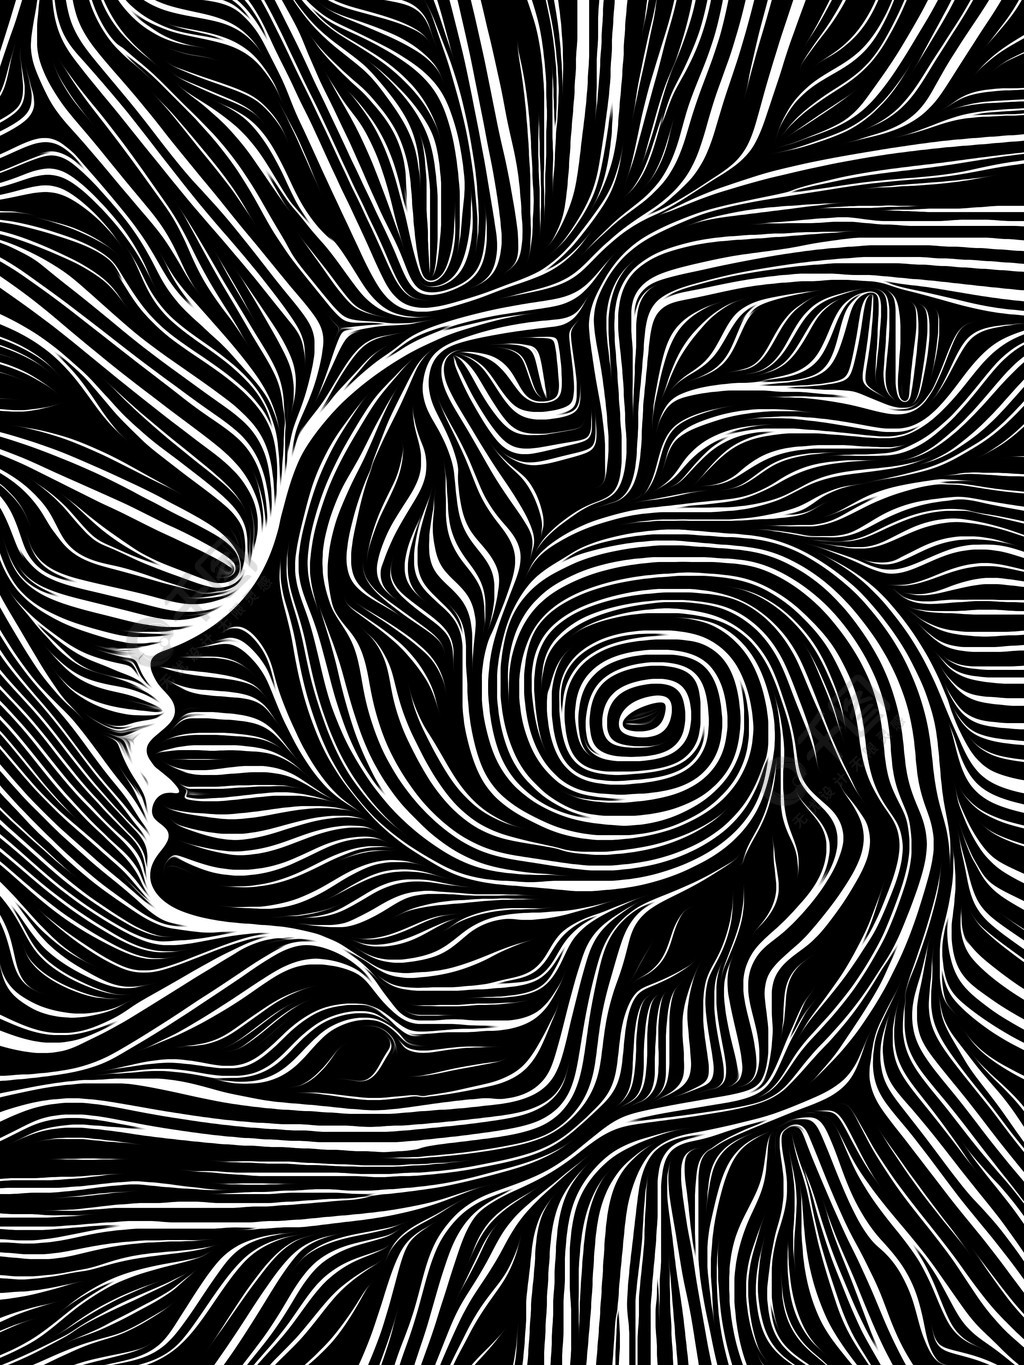 轮廓面集成在黑白木刻图案中关于思想,意识,理性和人类戏剧的主题黑白